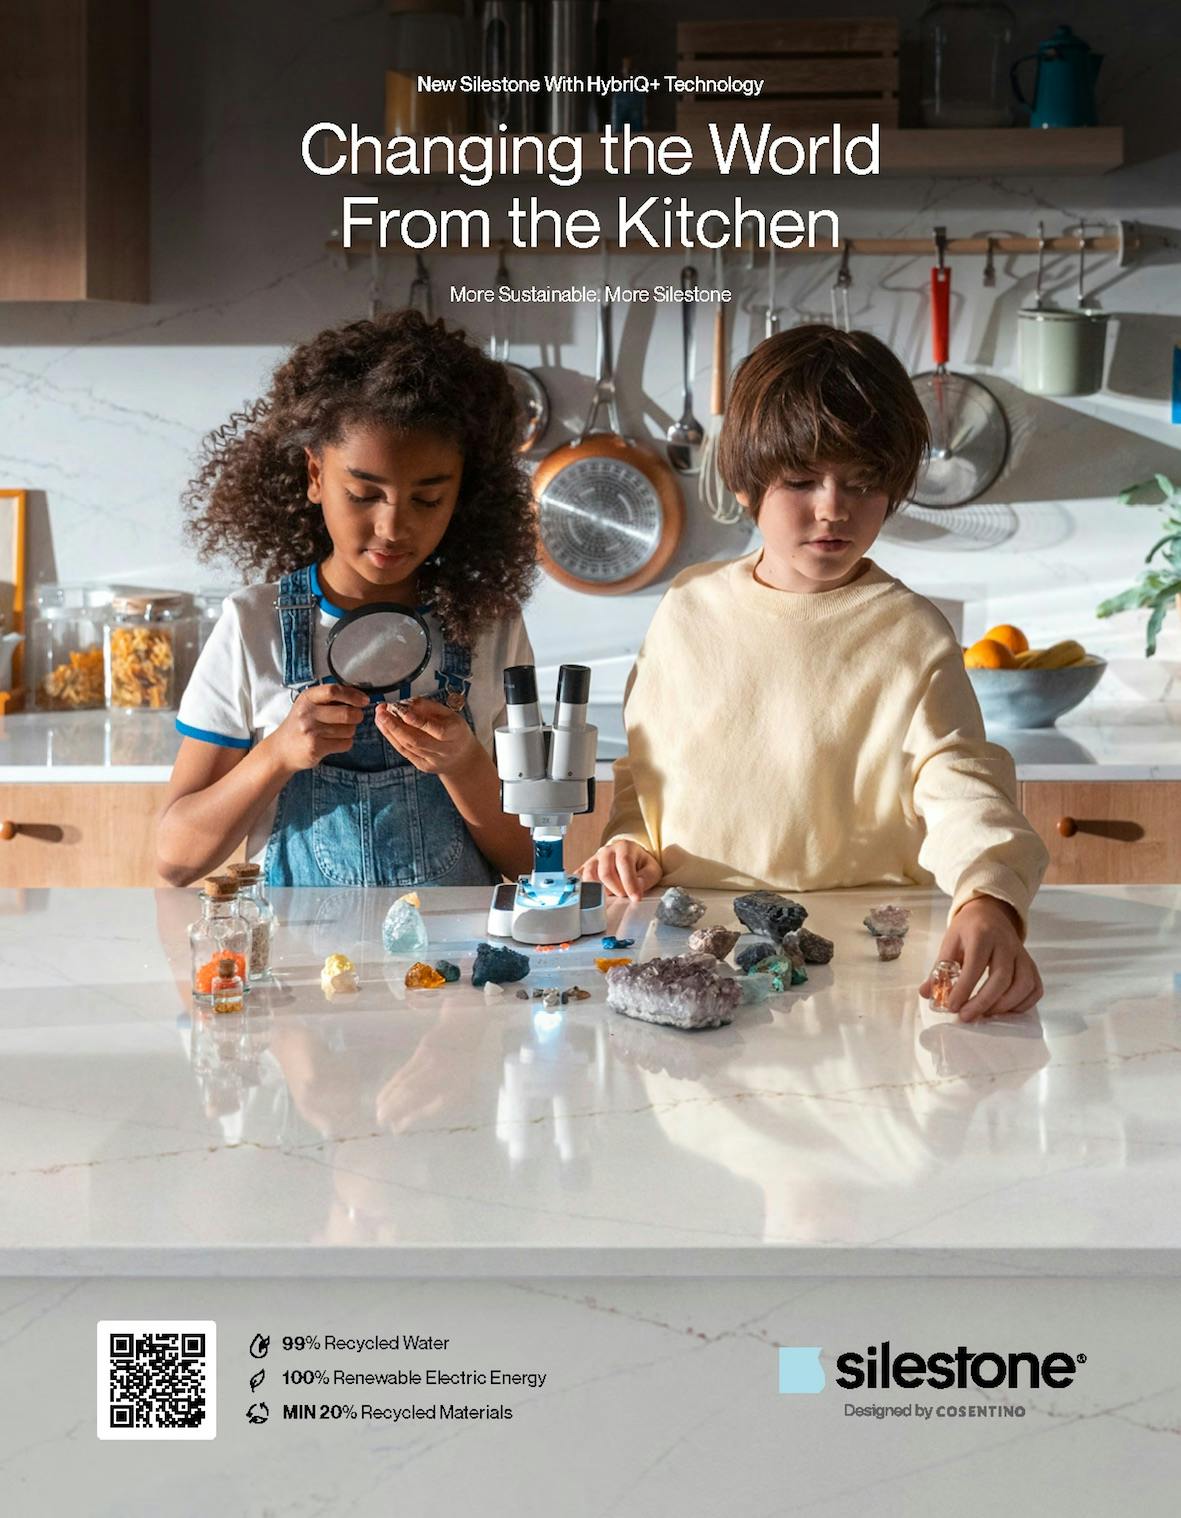 ”Förändra världen från köket”: ny Silestone-kampanj kring innovation och hållbarhet för att förändra världen